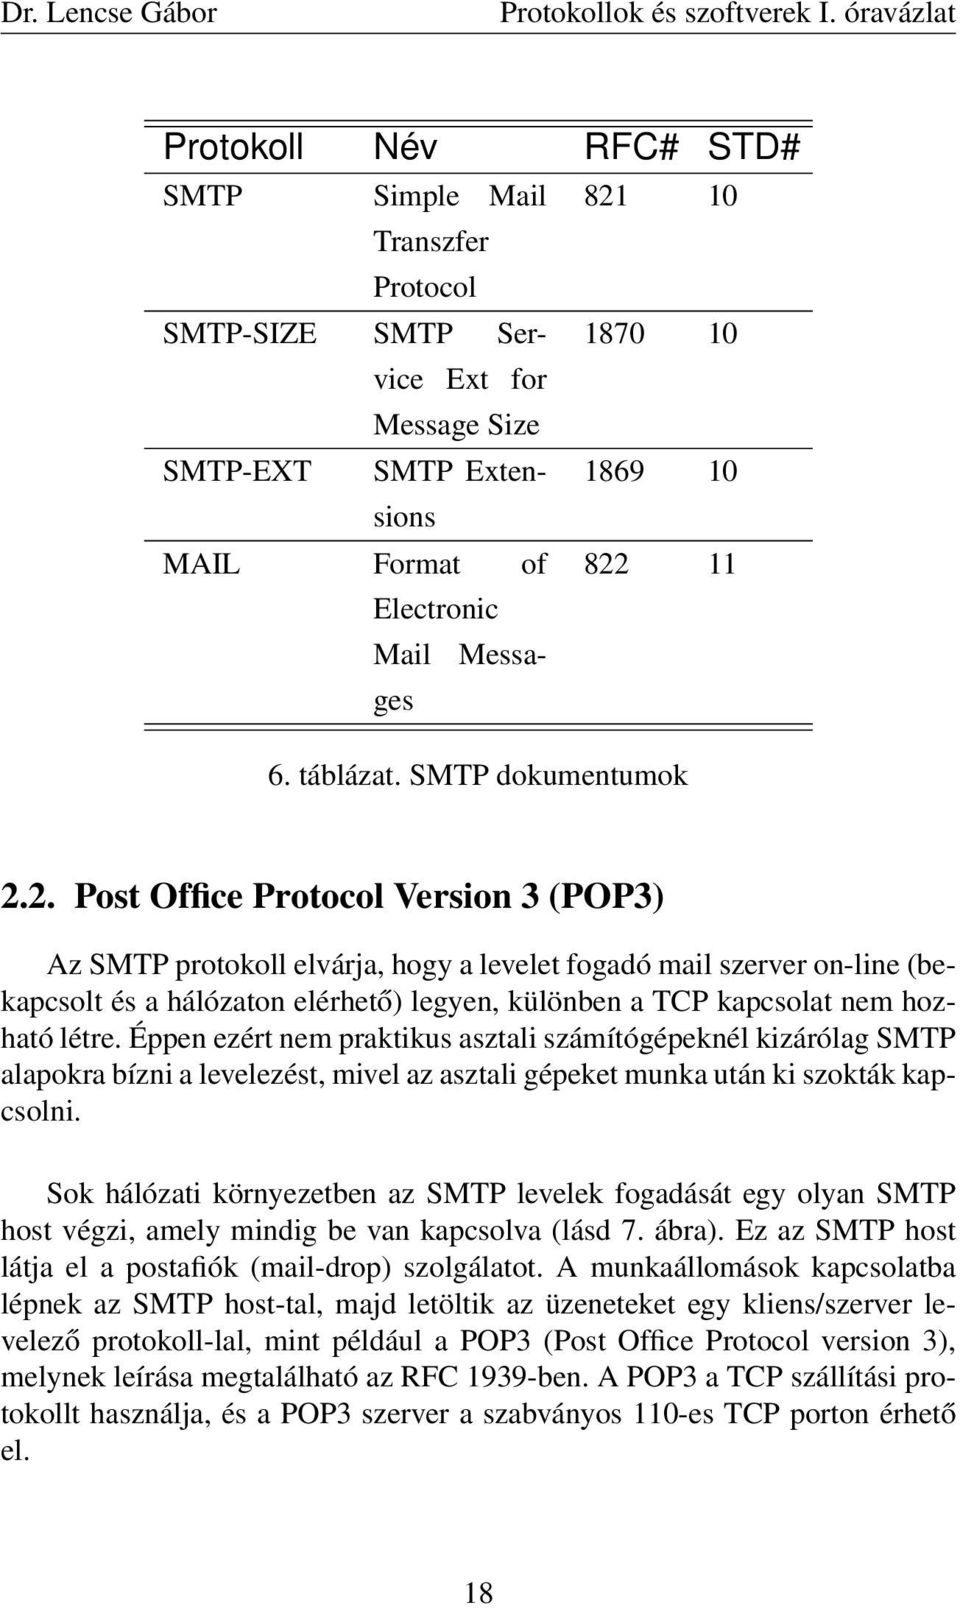 2. Post Office Protocol Version 3 (POP3) Az SMTP protokoll elvárja, hogy a levelet fogadó mail szerver on-line (bekapcsolt és a hálózaton elérhető) legyen, különben a TCP kapcsolat nem hozható létre.